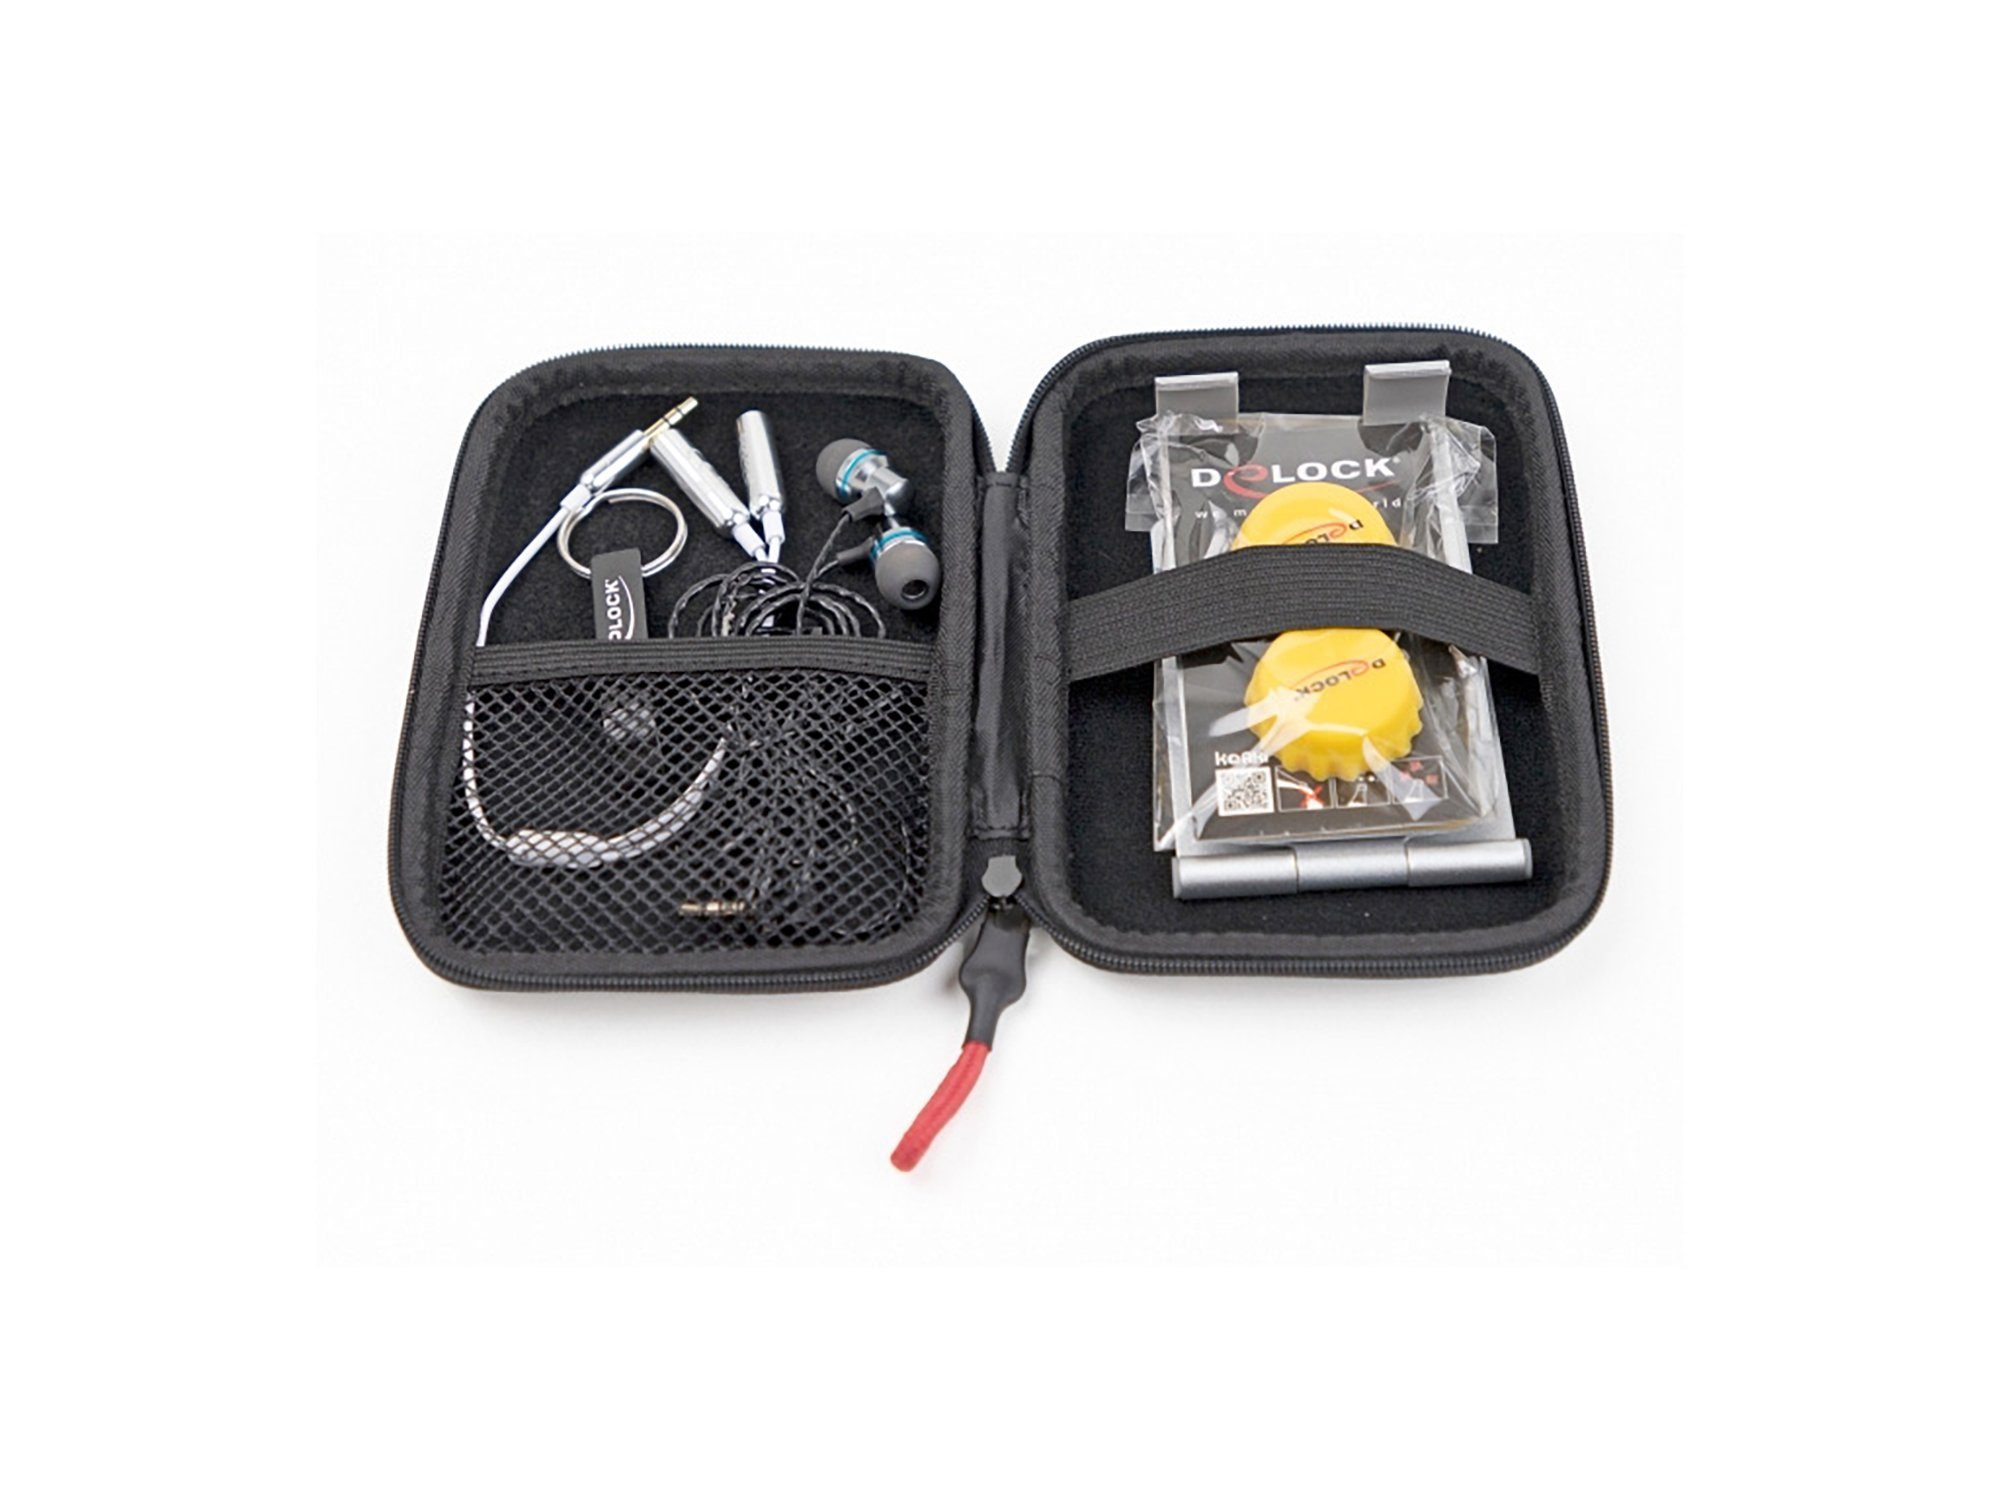 Sound I Kabel (PC), Zubehör Adapter - und Grau Travel Edition Kit DELOCK